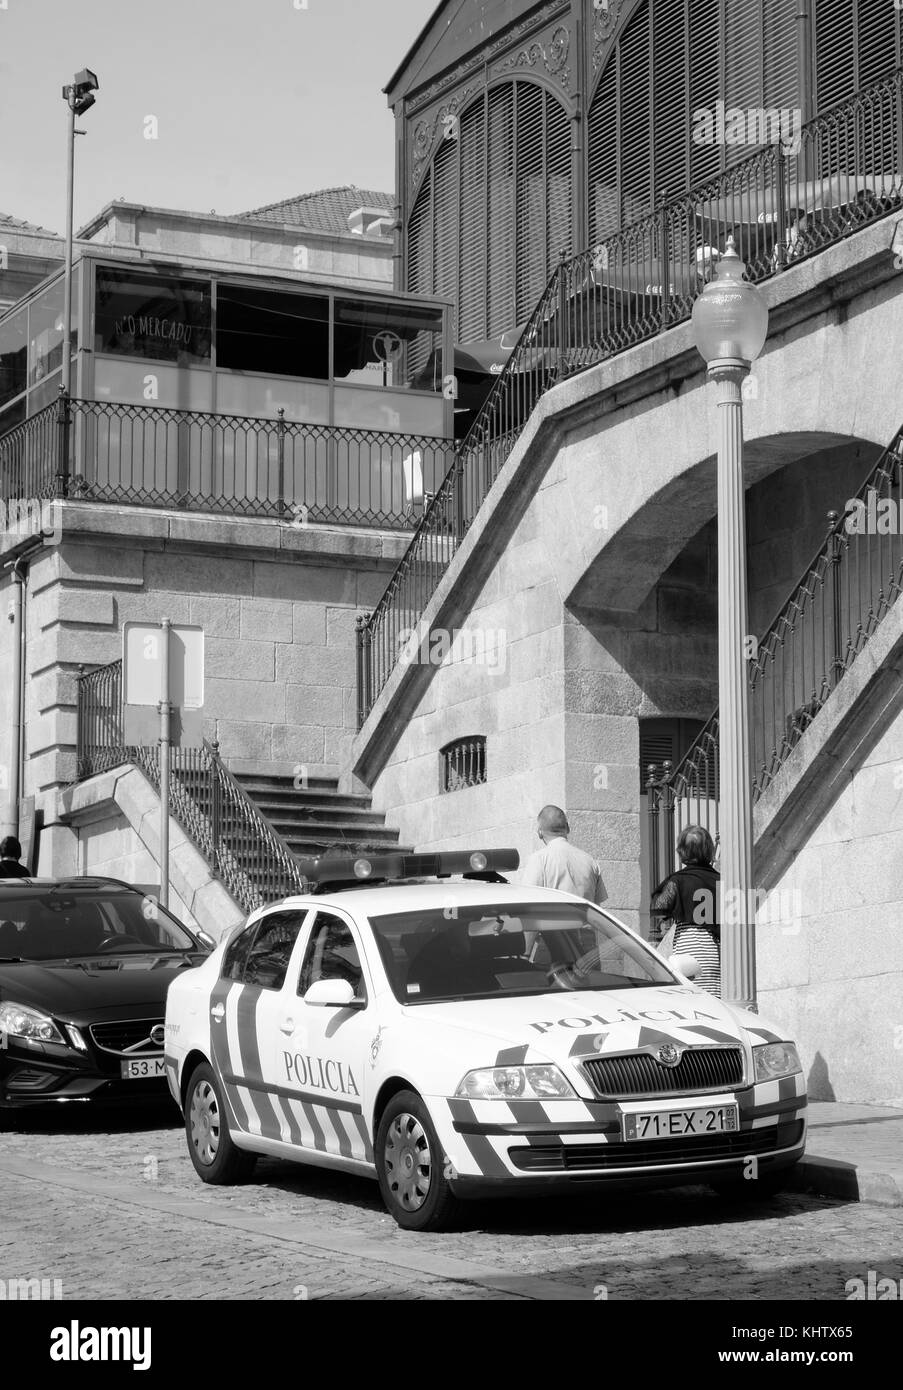 September 2017 -  Skoda Octavia Police car in the Portuguese City of Porto. Stock Photo